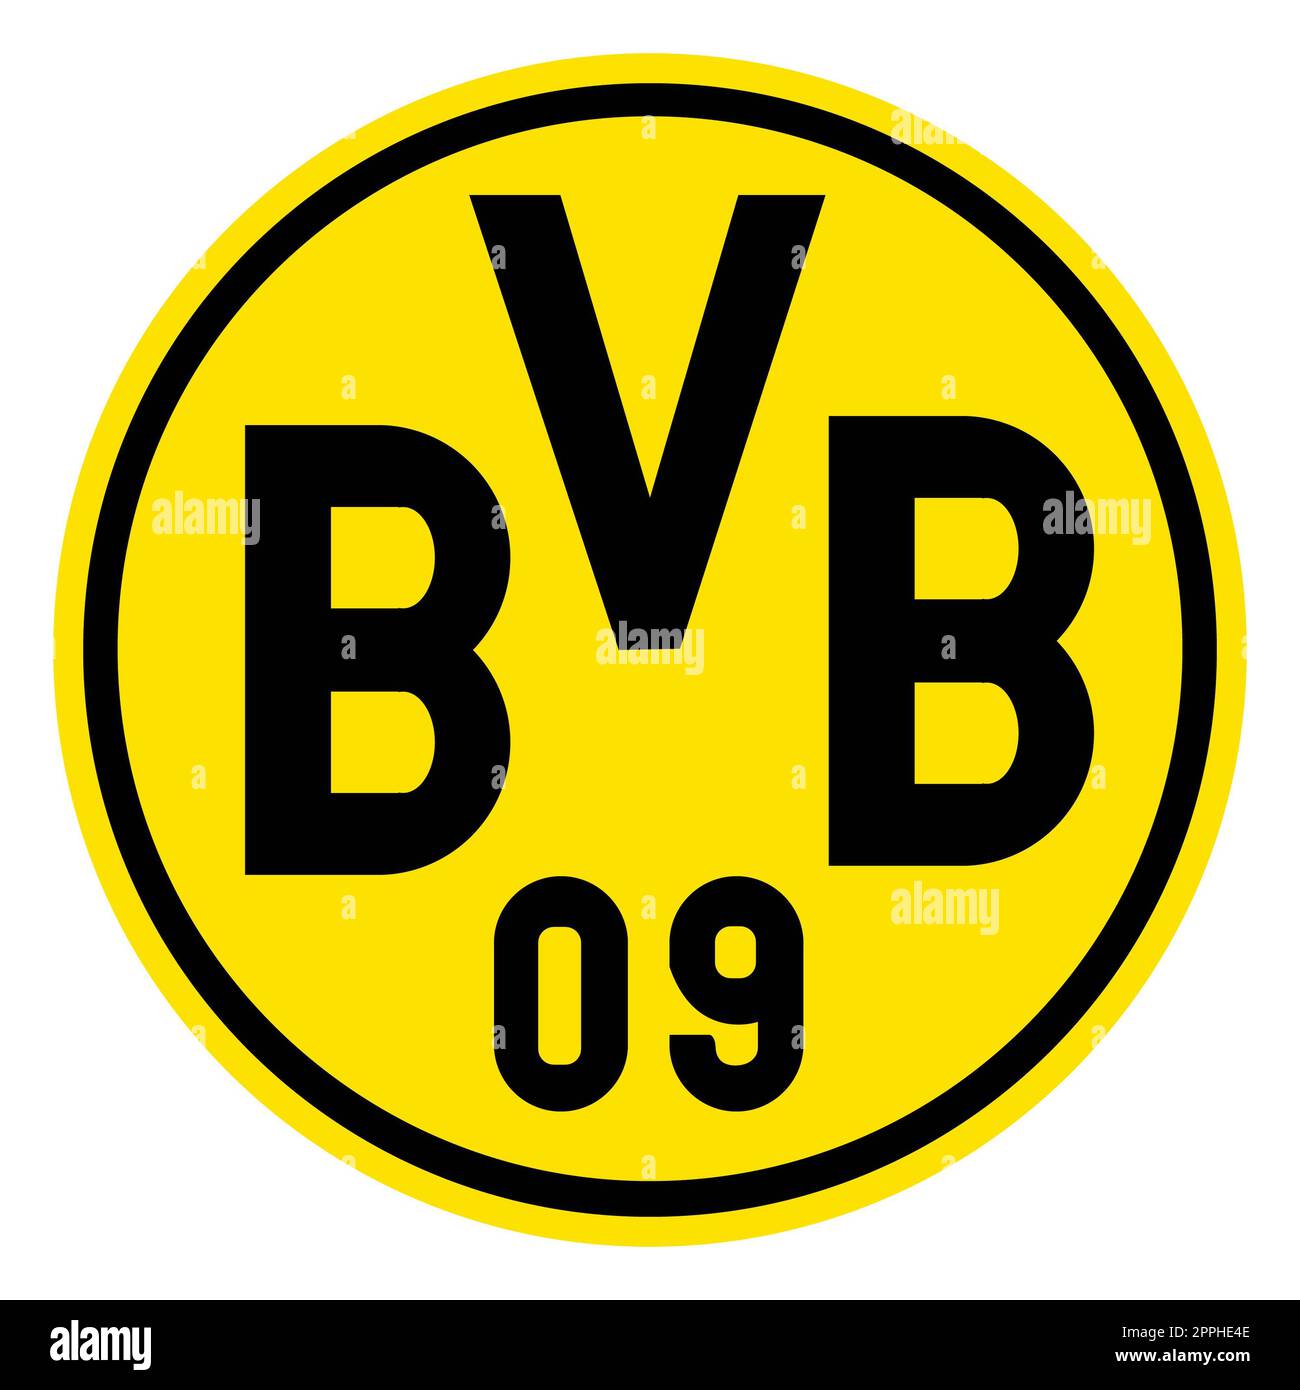 Francoforte sul meno, Germania - 10.23.2022 Logo della squadra di calcio tedesca Borussia Dortmund. Immagine vettoriale. Foto Stock